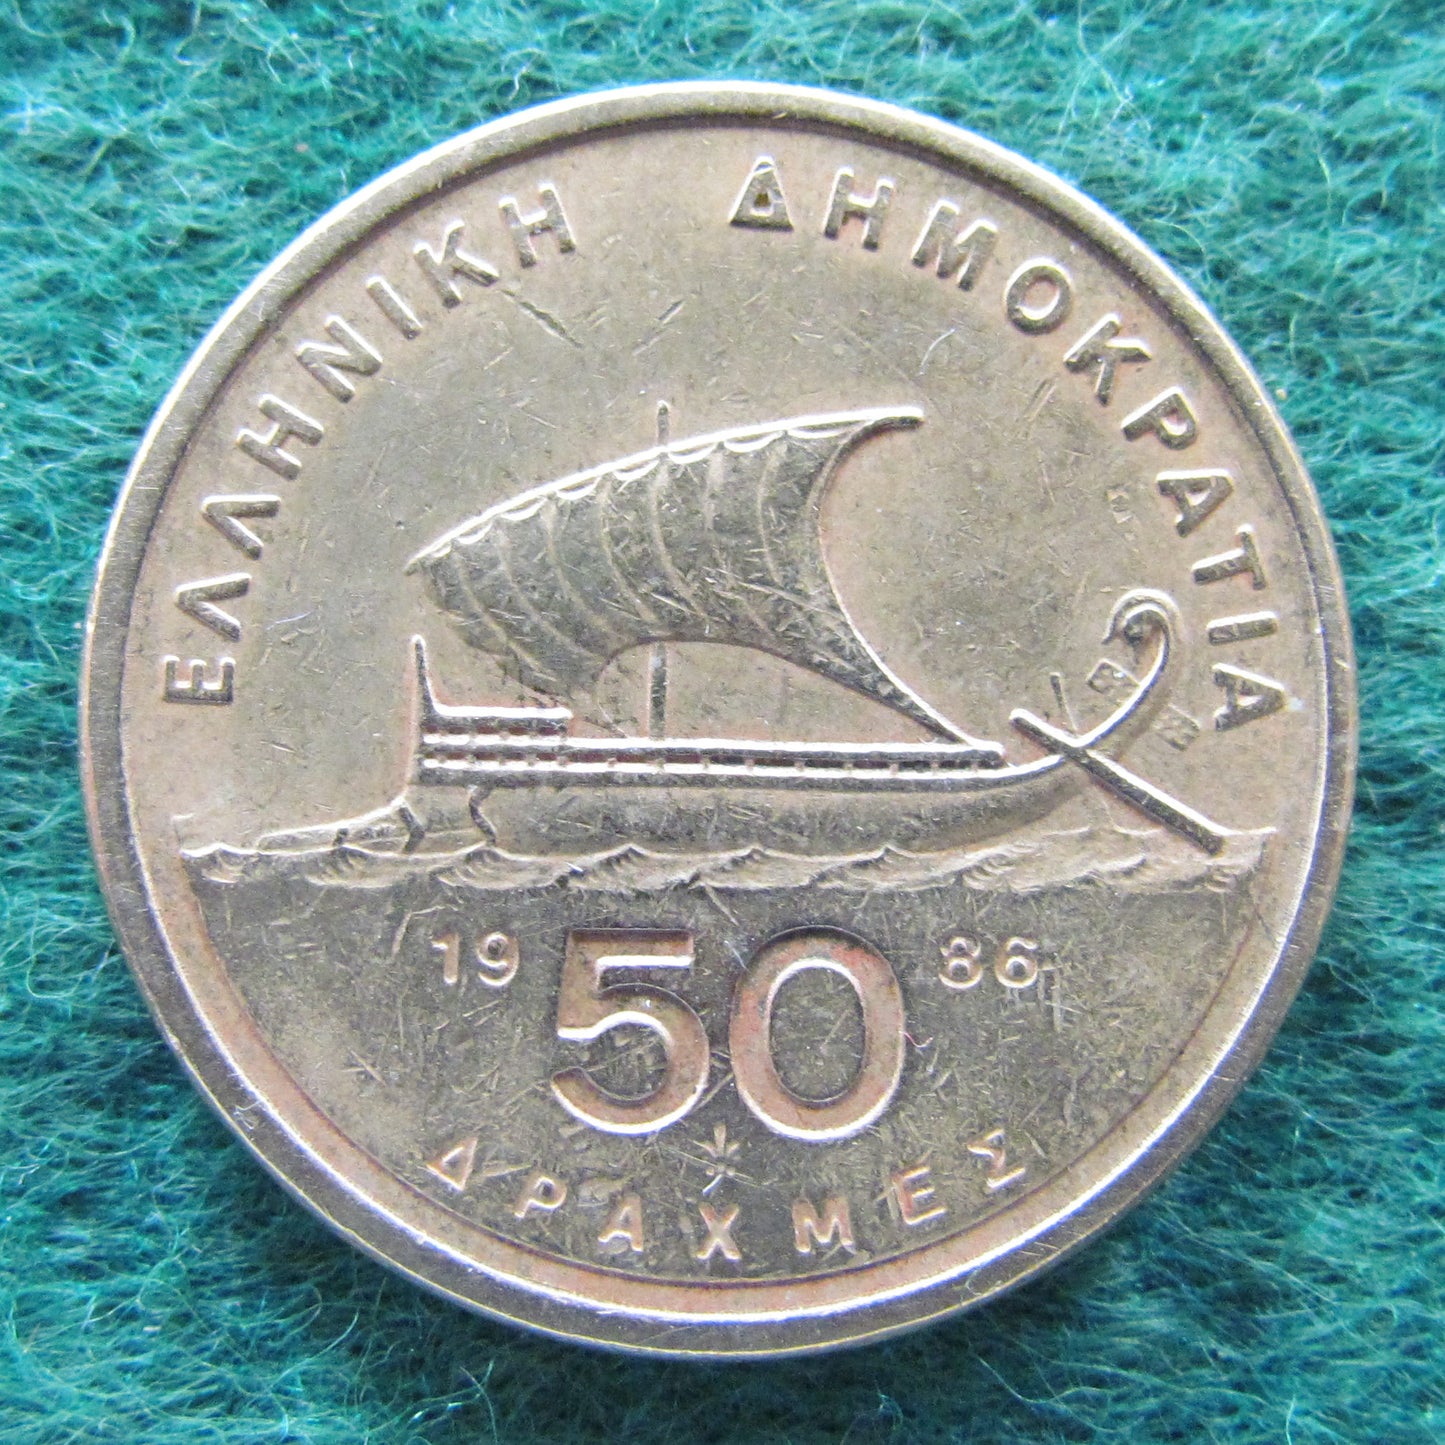 Greek 1986 50 Drachma Coin